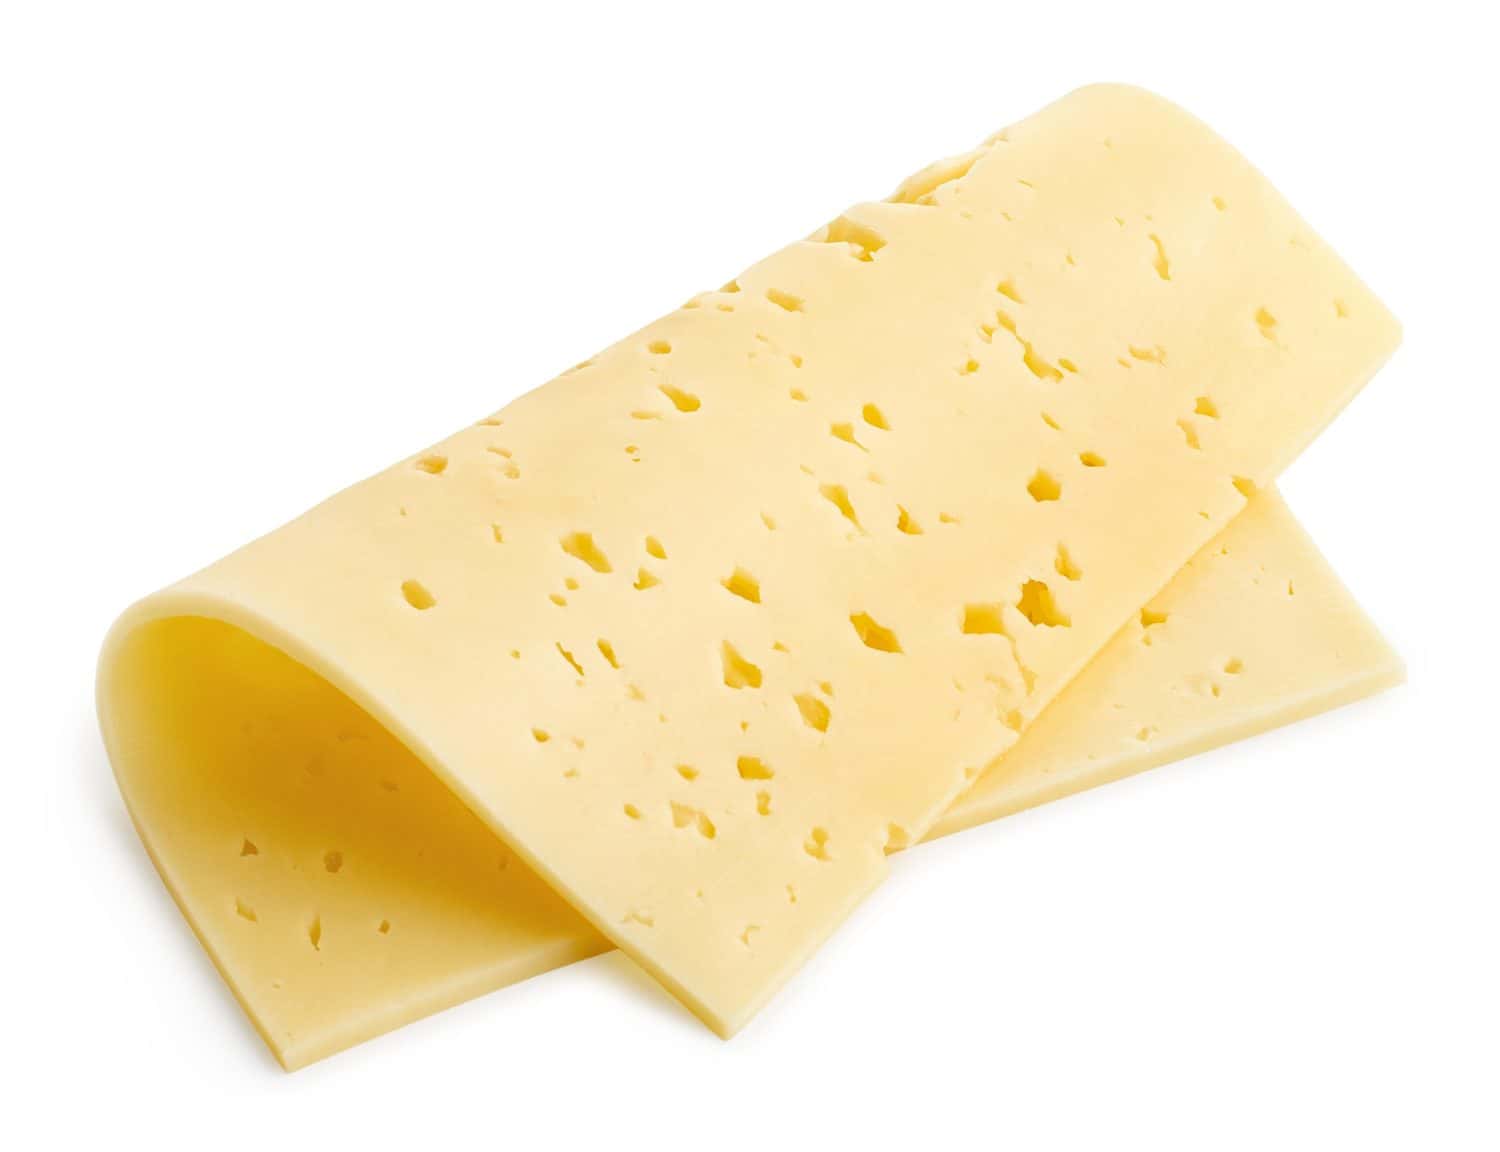 Una fetta piegata di formaggio svizzero tilsiter isolata su sfondo bianco